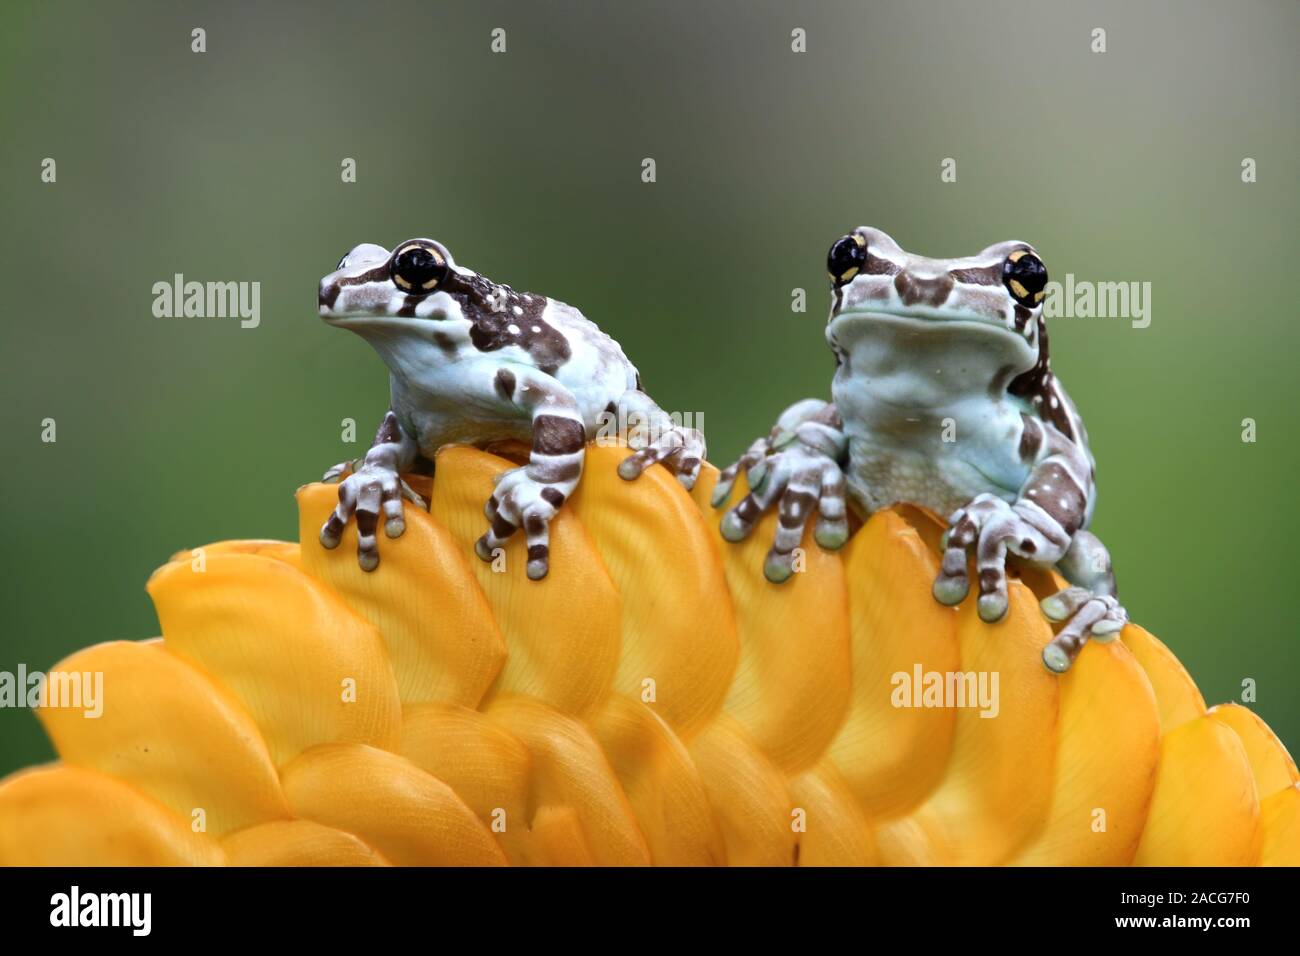 Zwei Amazon Milch Frösche auf eine gelbe Blume, Indonesien Stockfotografie  - Alamy